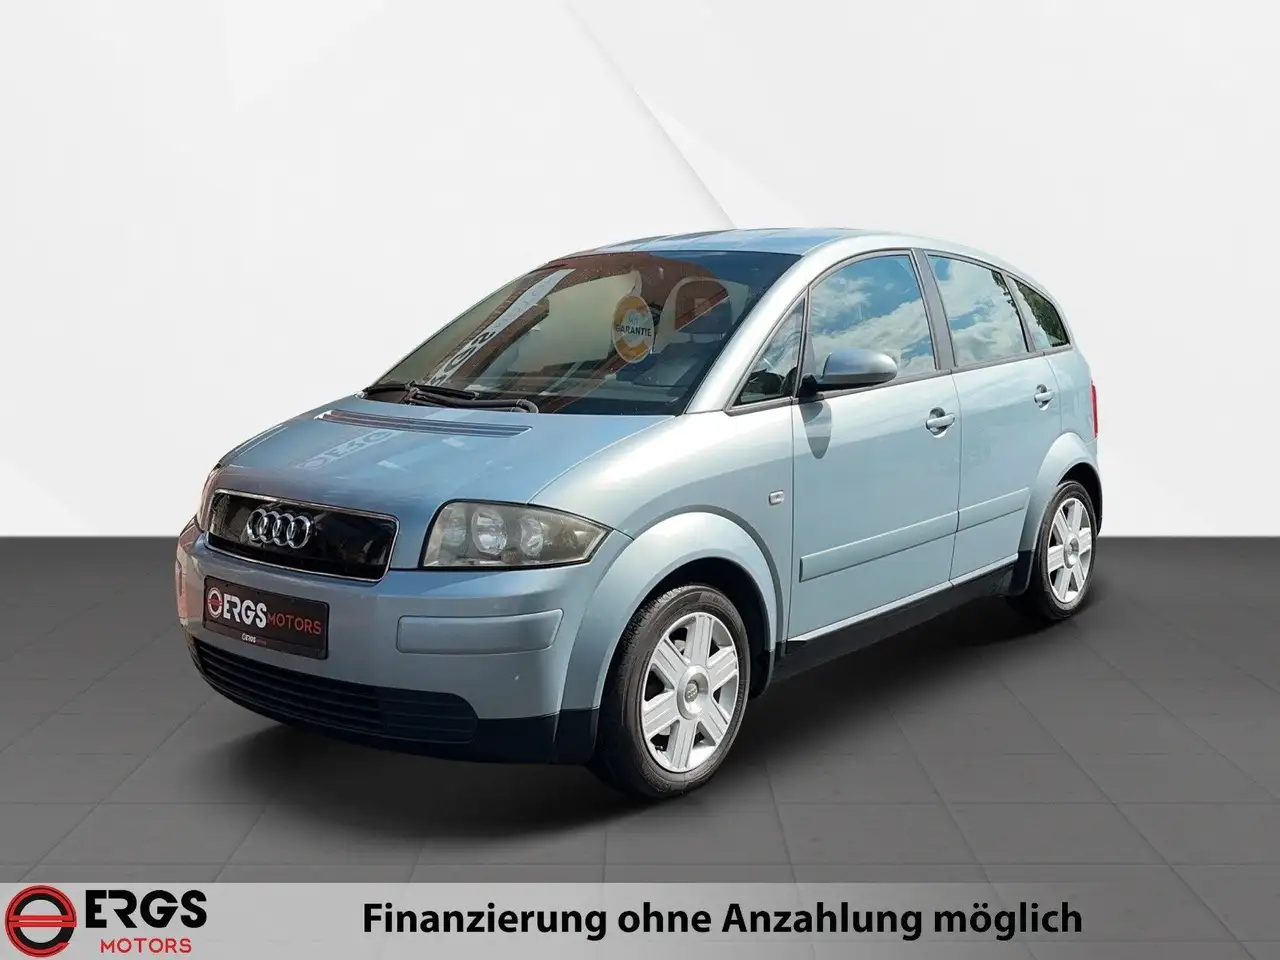 Audi A2 Limousine in Blau gebraucht in Ronnenberg OT Empelde für € 5.980,-